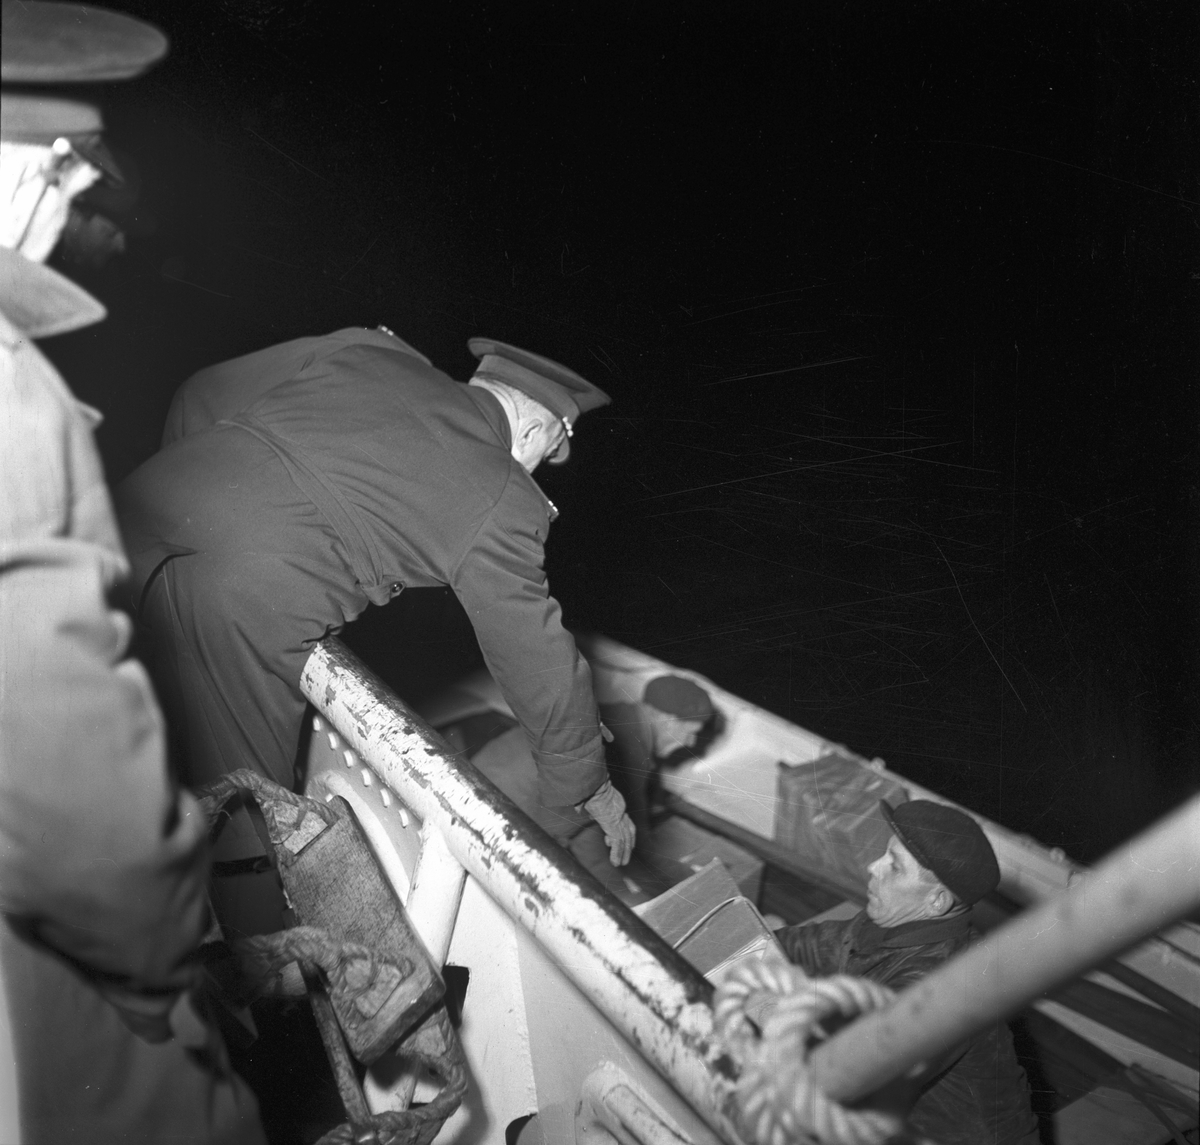 Julbåt till fyrskepp. December 1948.